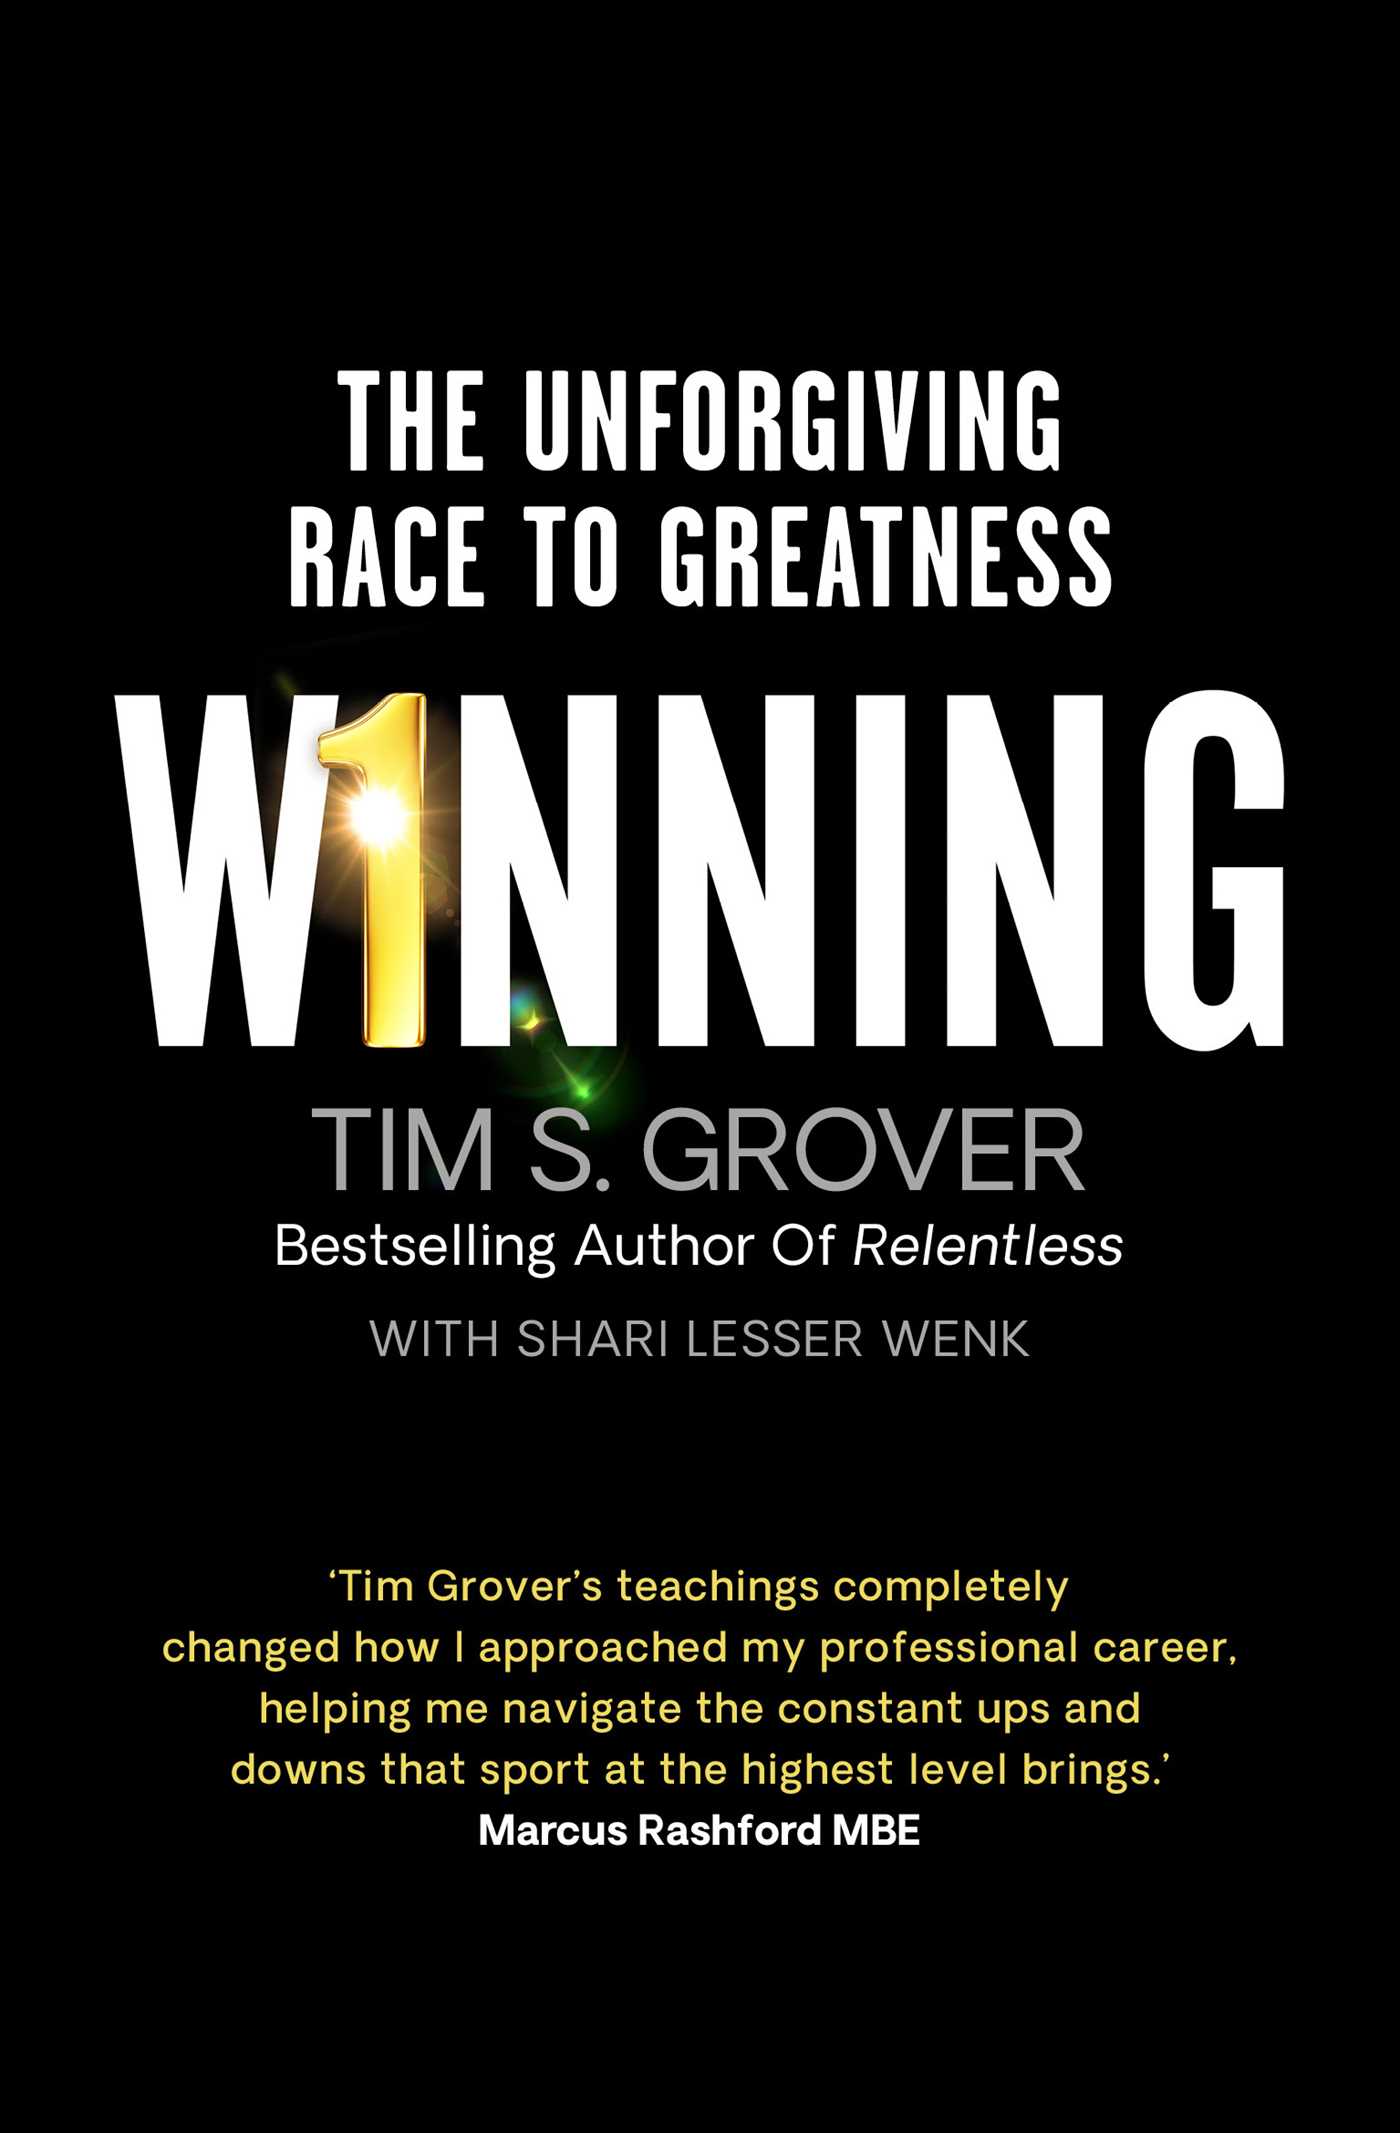 WINNING by Tim S. Grover